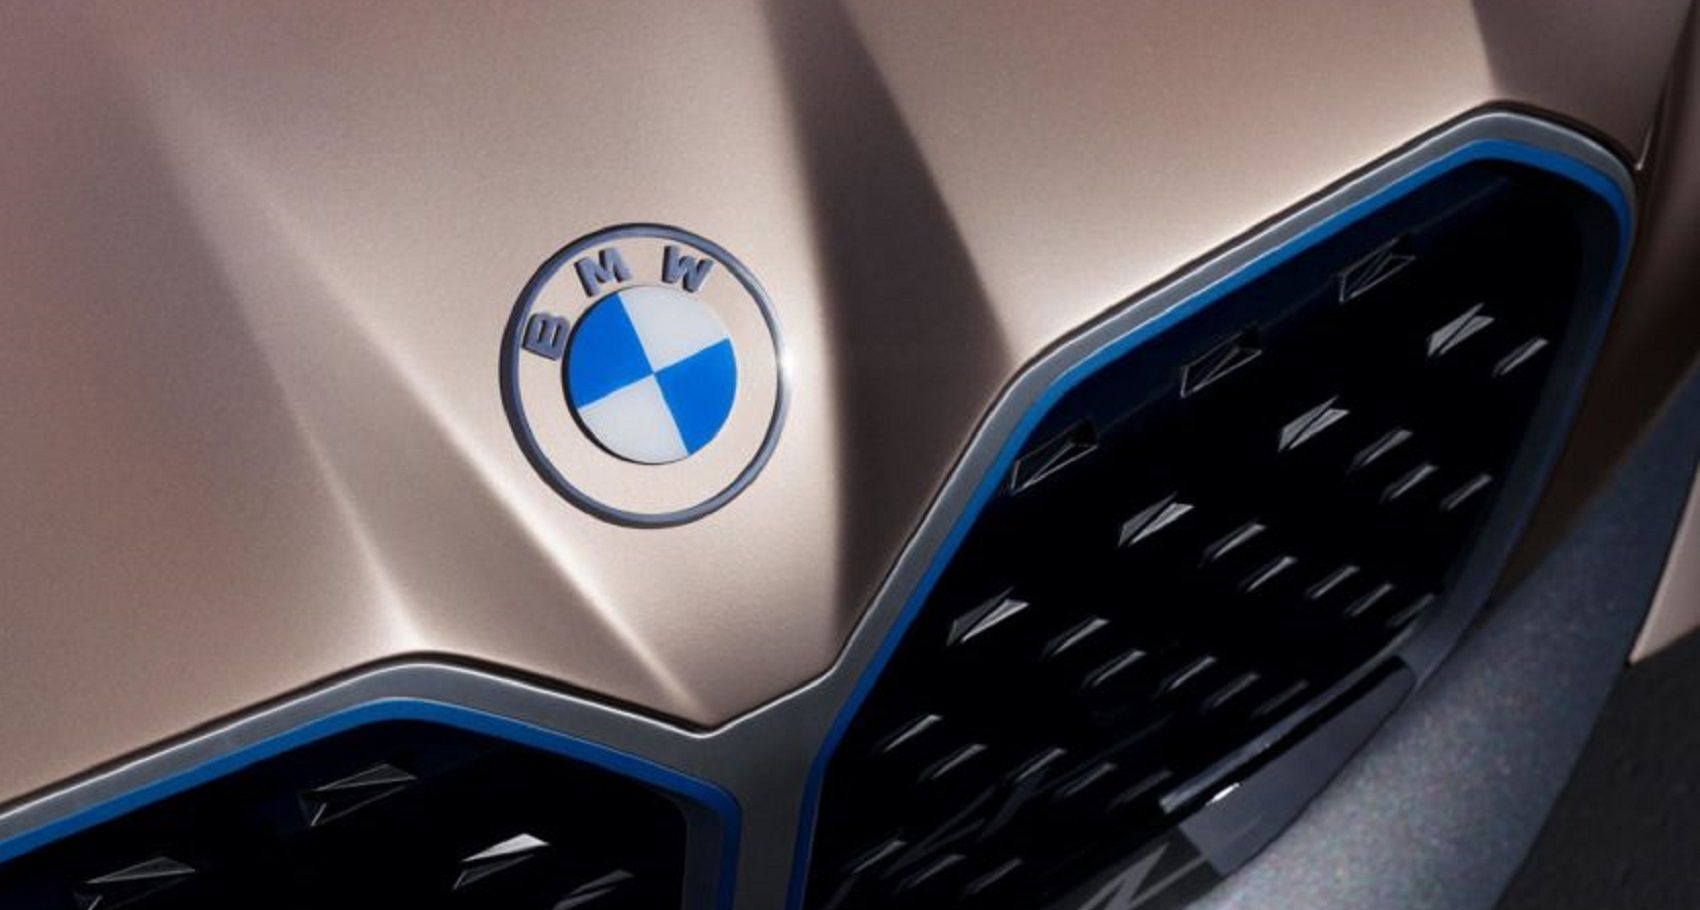 BMW Concept i4 new logo image